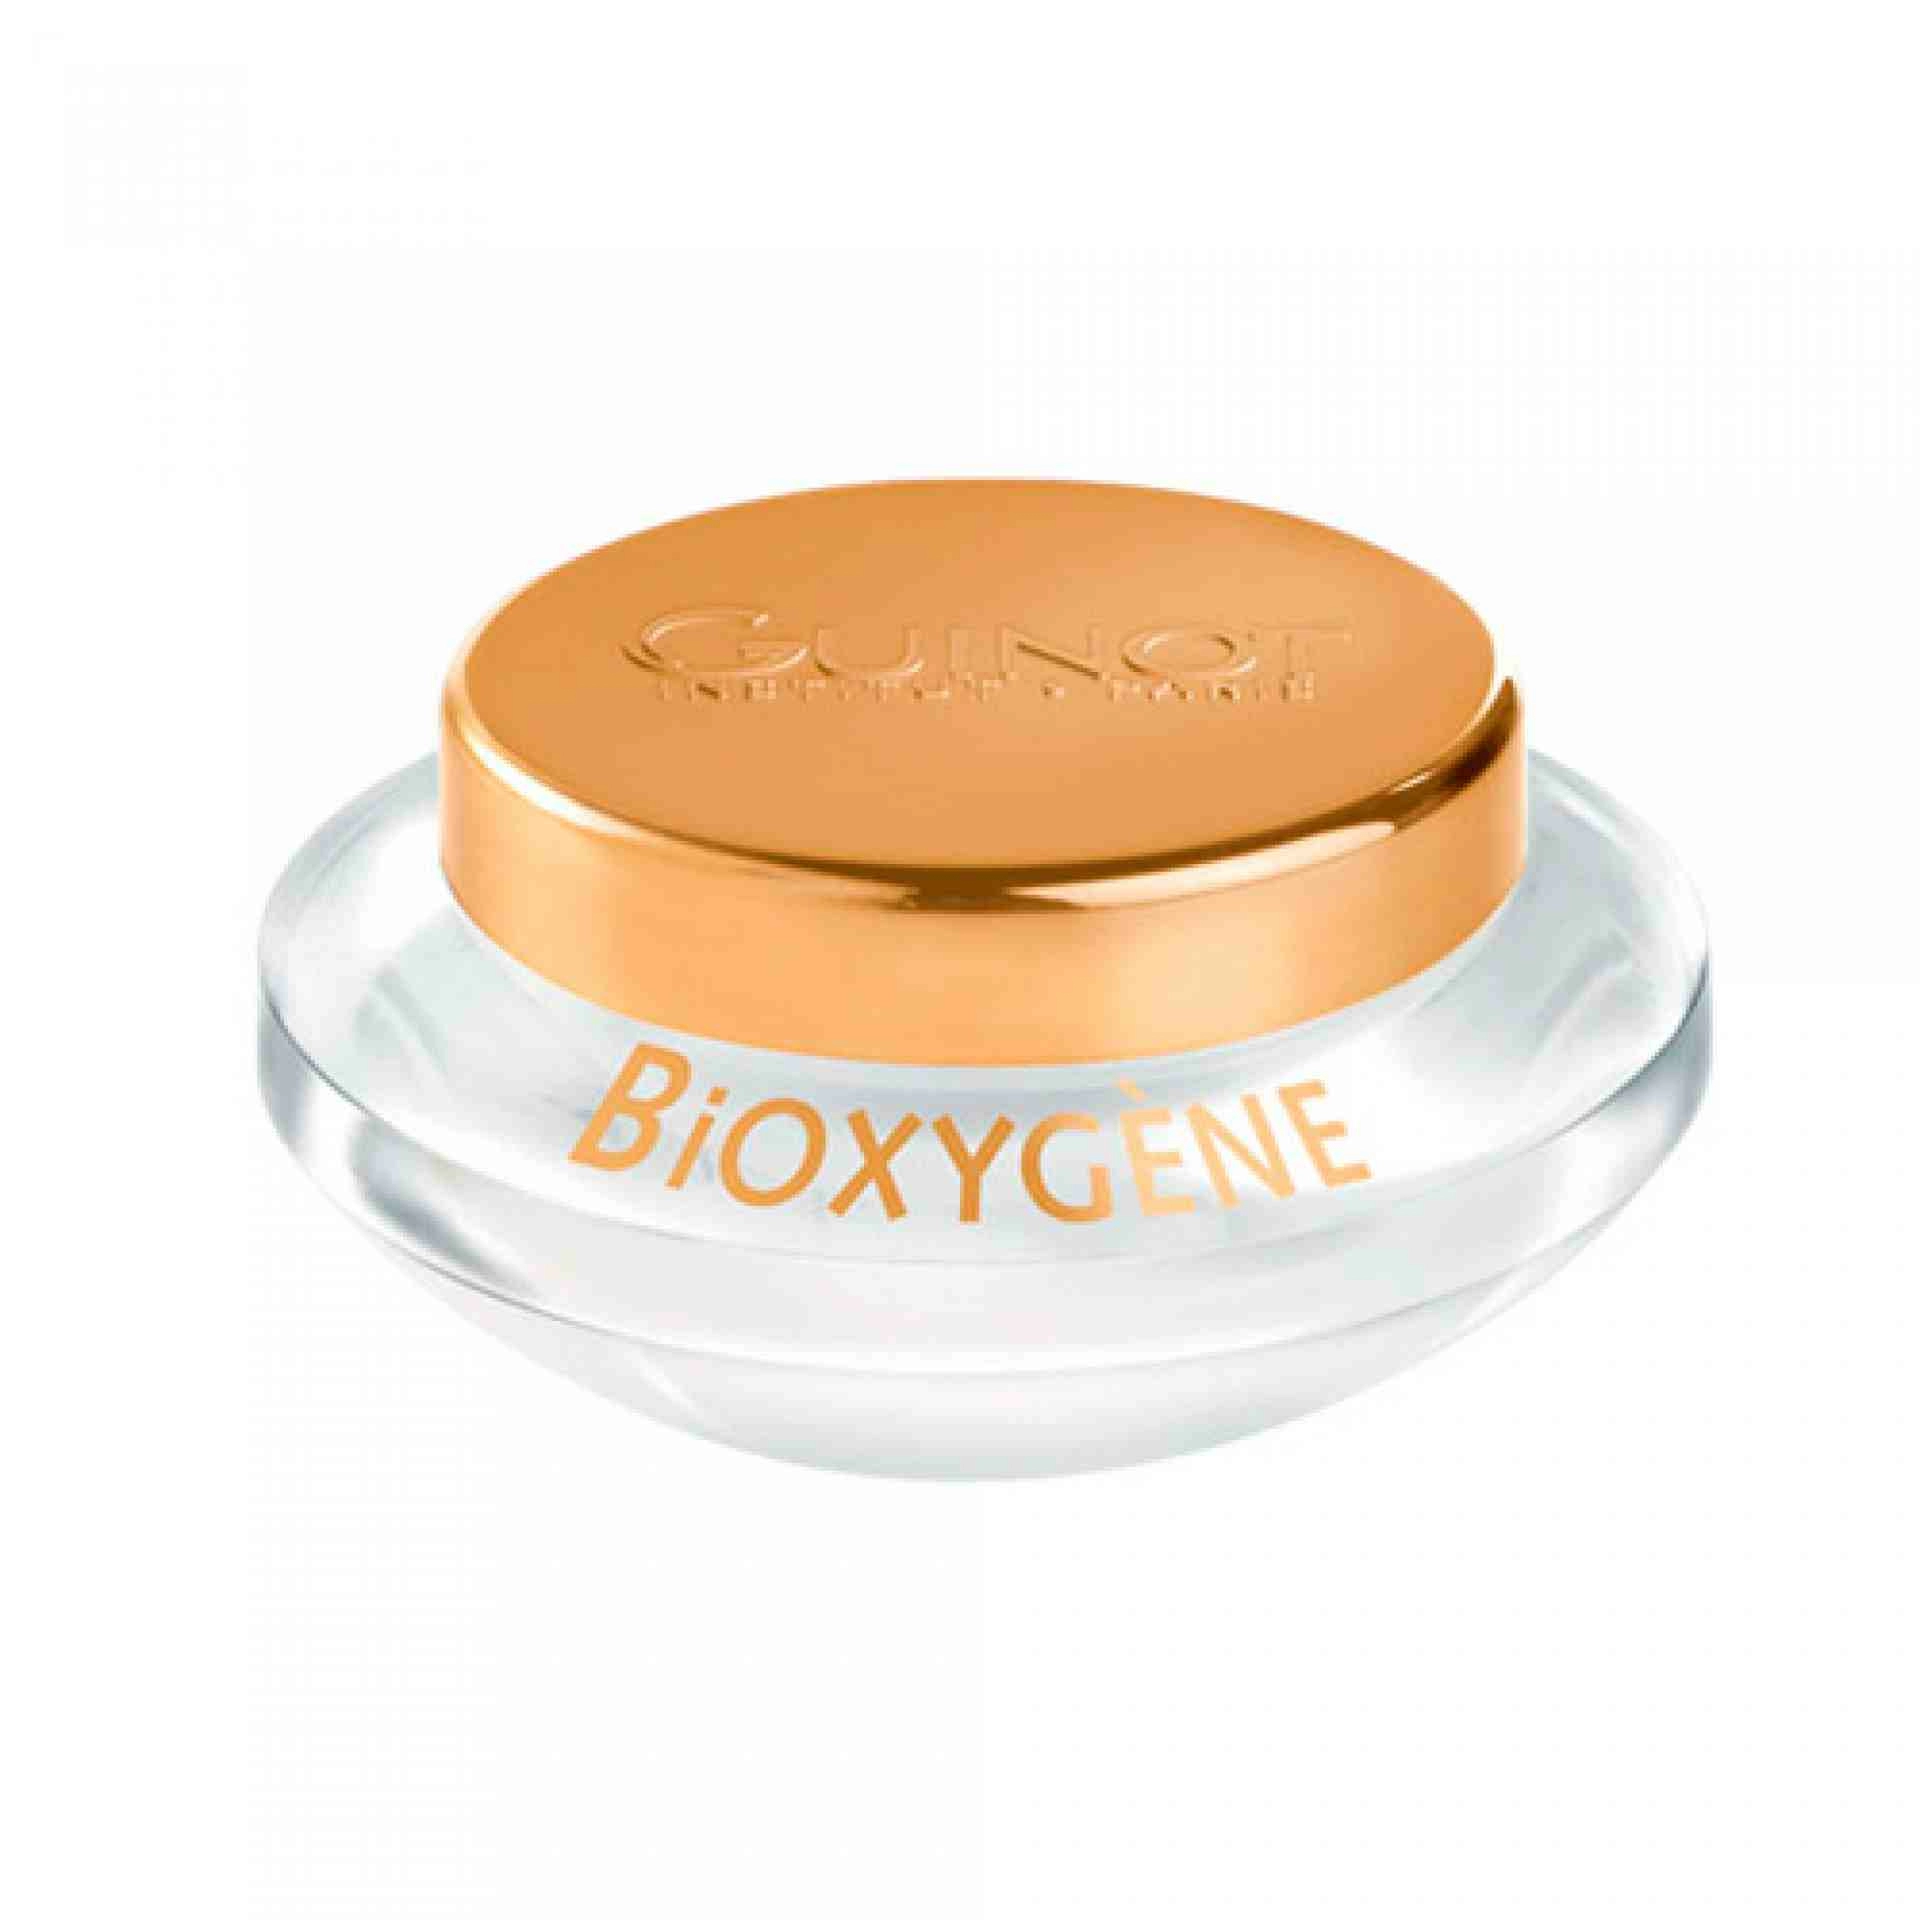 Crème Bioxygène | Crema Oxigenante 50ml - Guinot ®